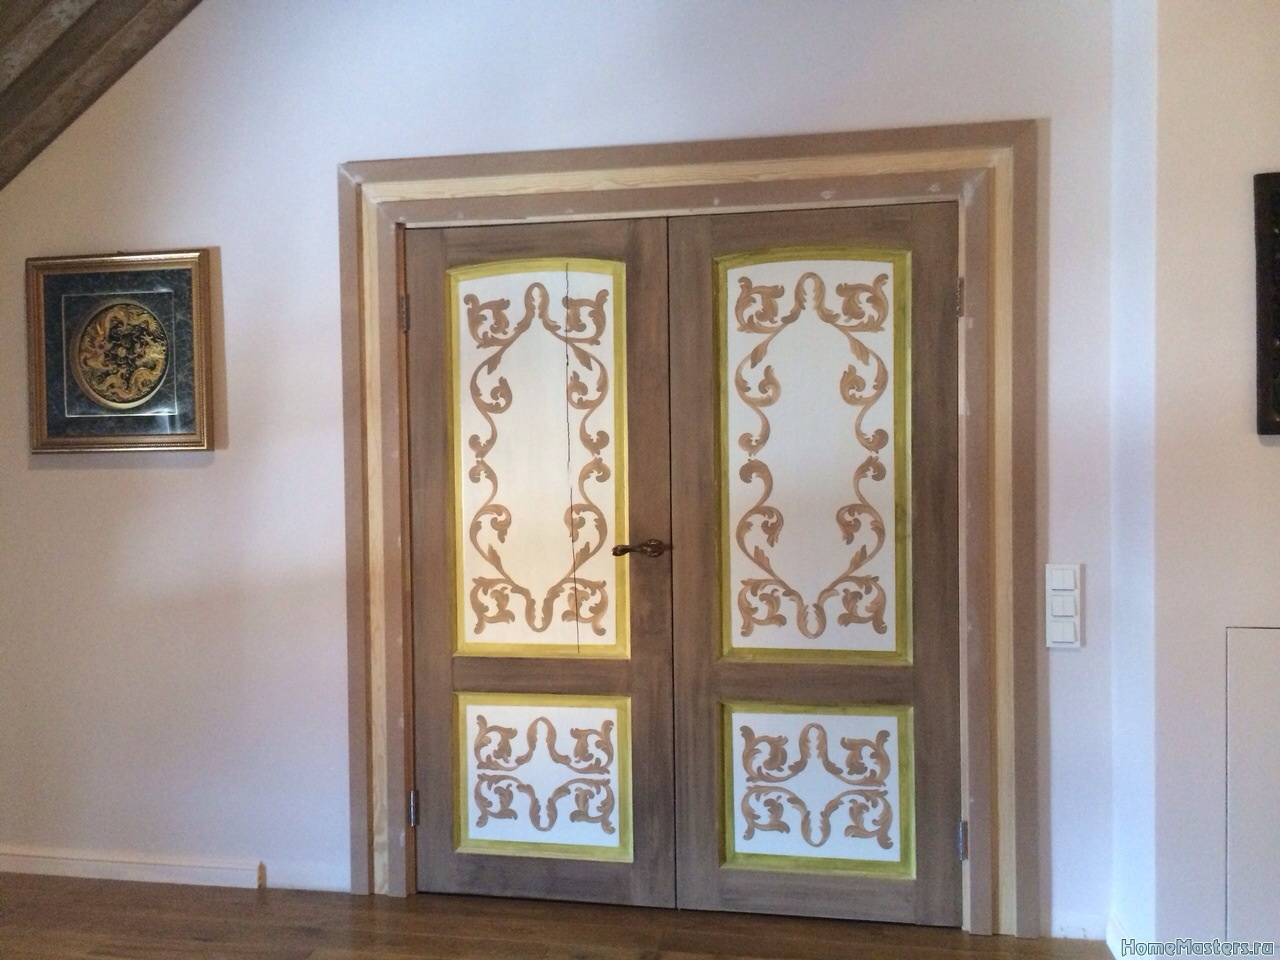 Реставрация старой межкомнатной двери собственноручно